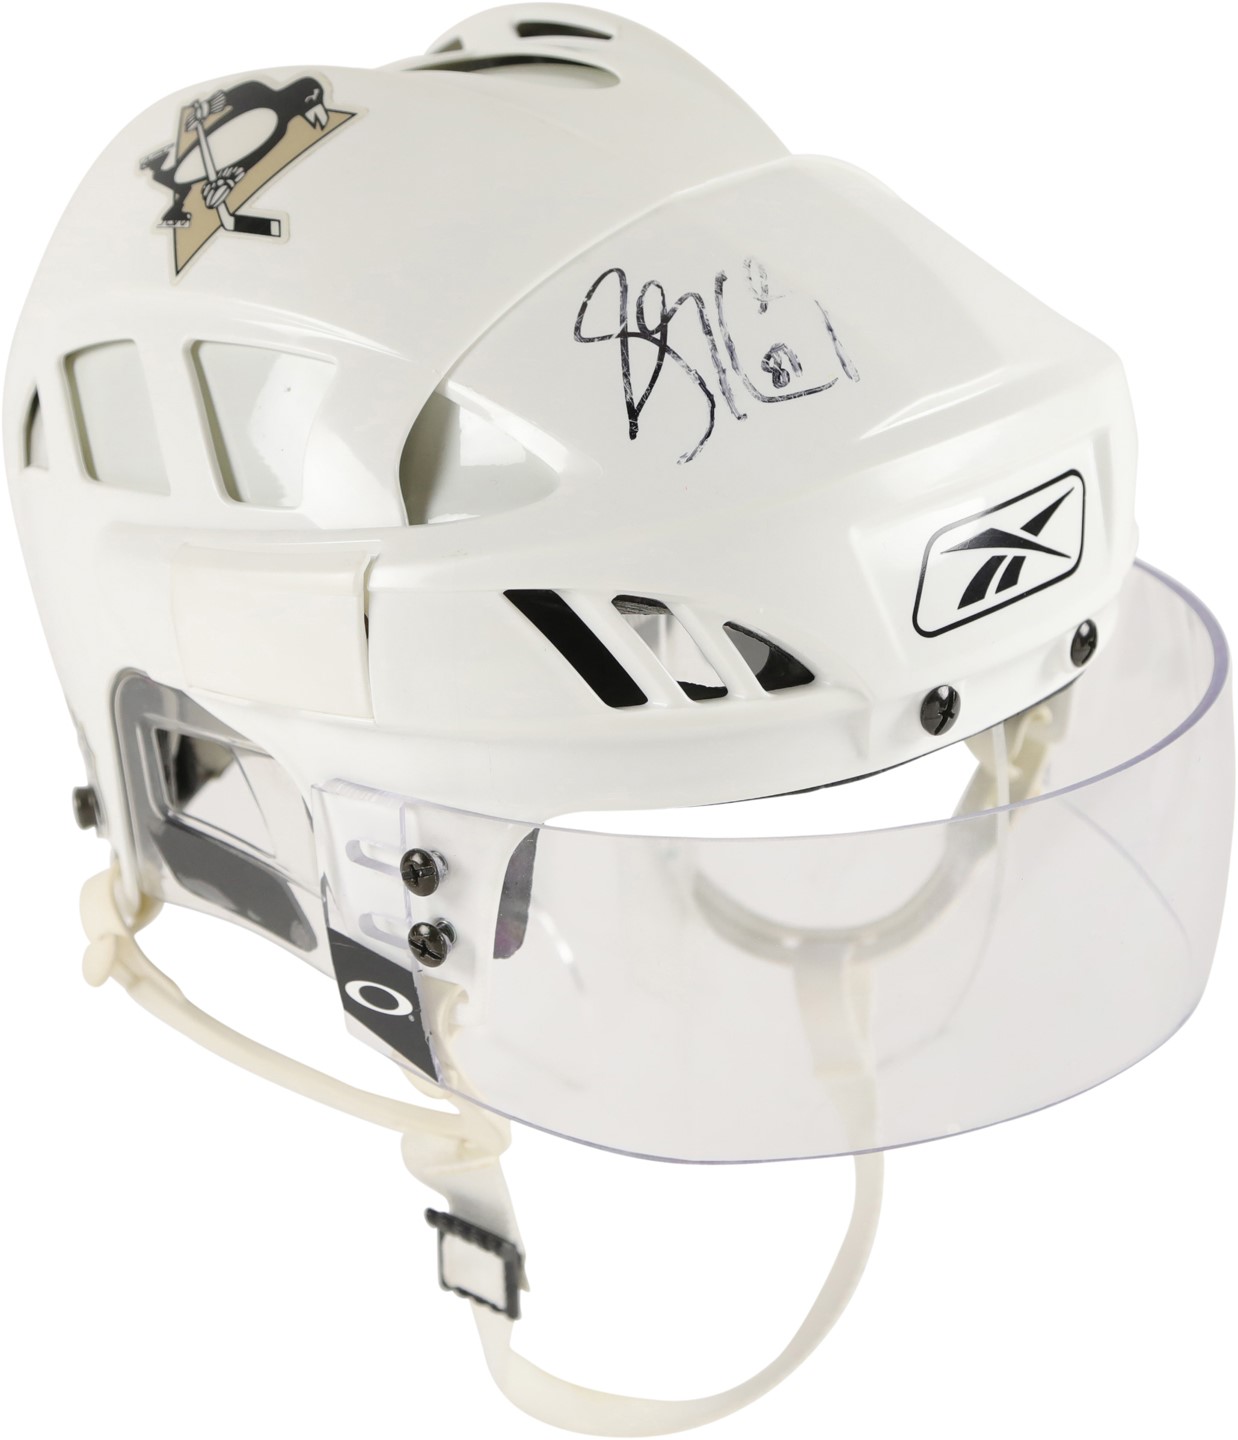 - 2005-06 Sidney Crosby Pittsburgh Penguins Signed Game Worn Rookie Helmet (Joe Toman LOA)